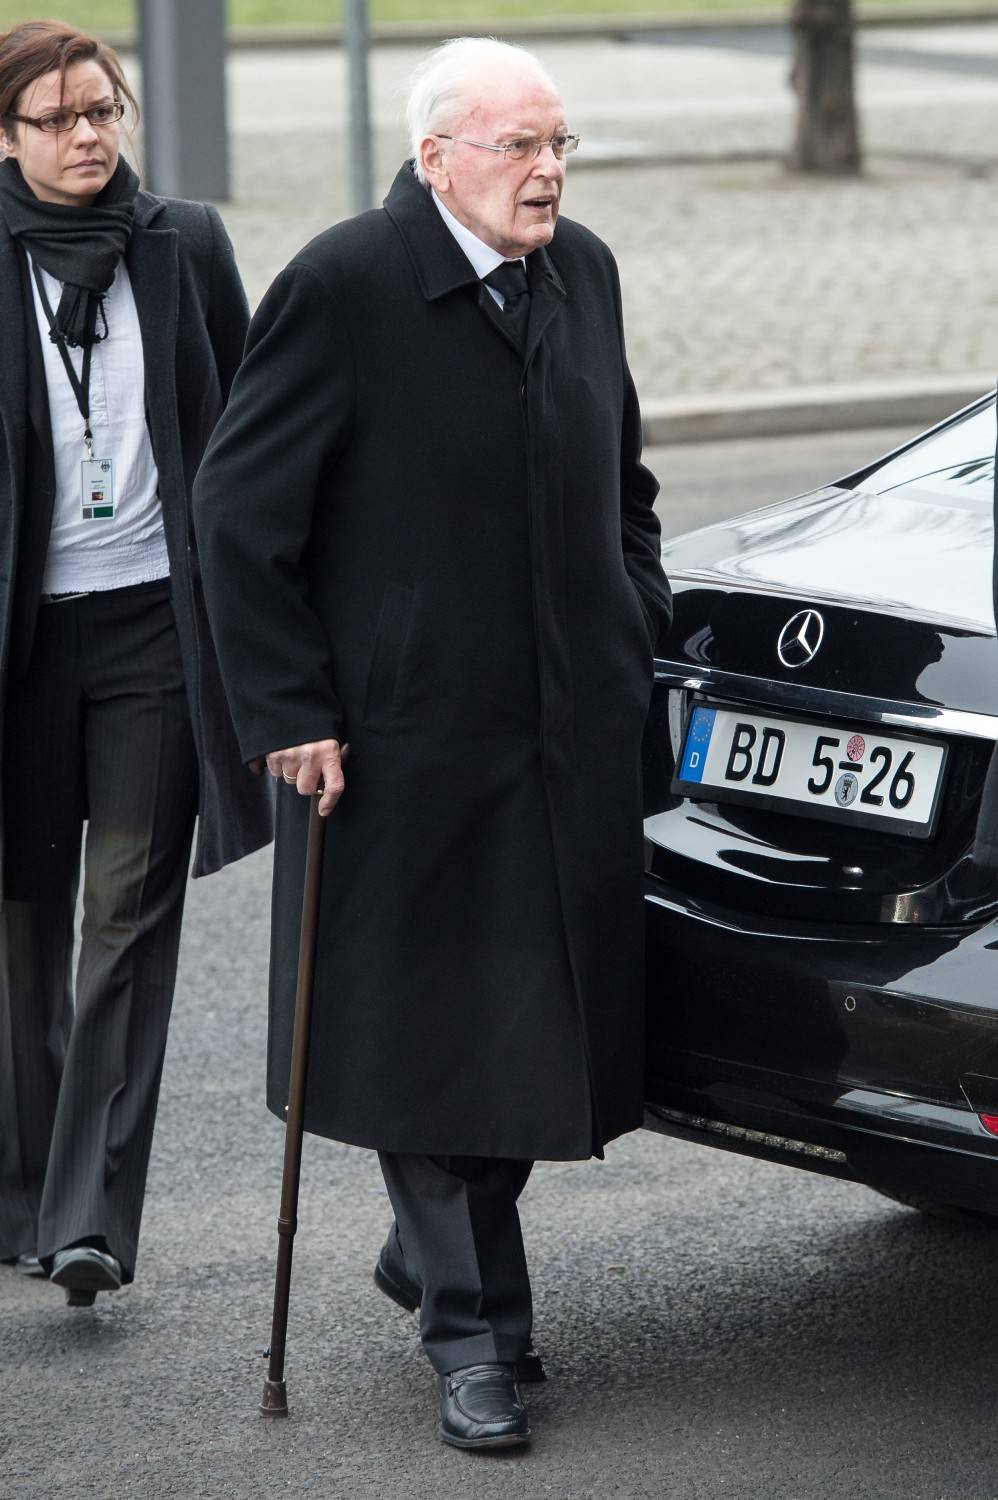 Morto Herzog, primo presidente eletto nella Germania unita